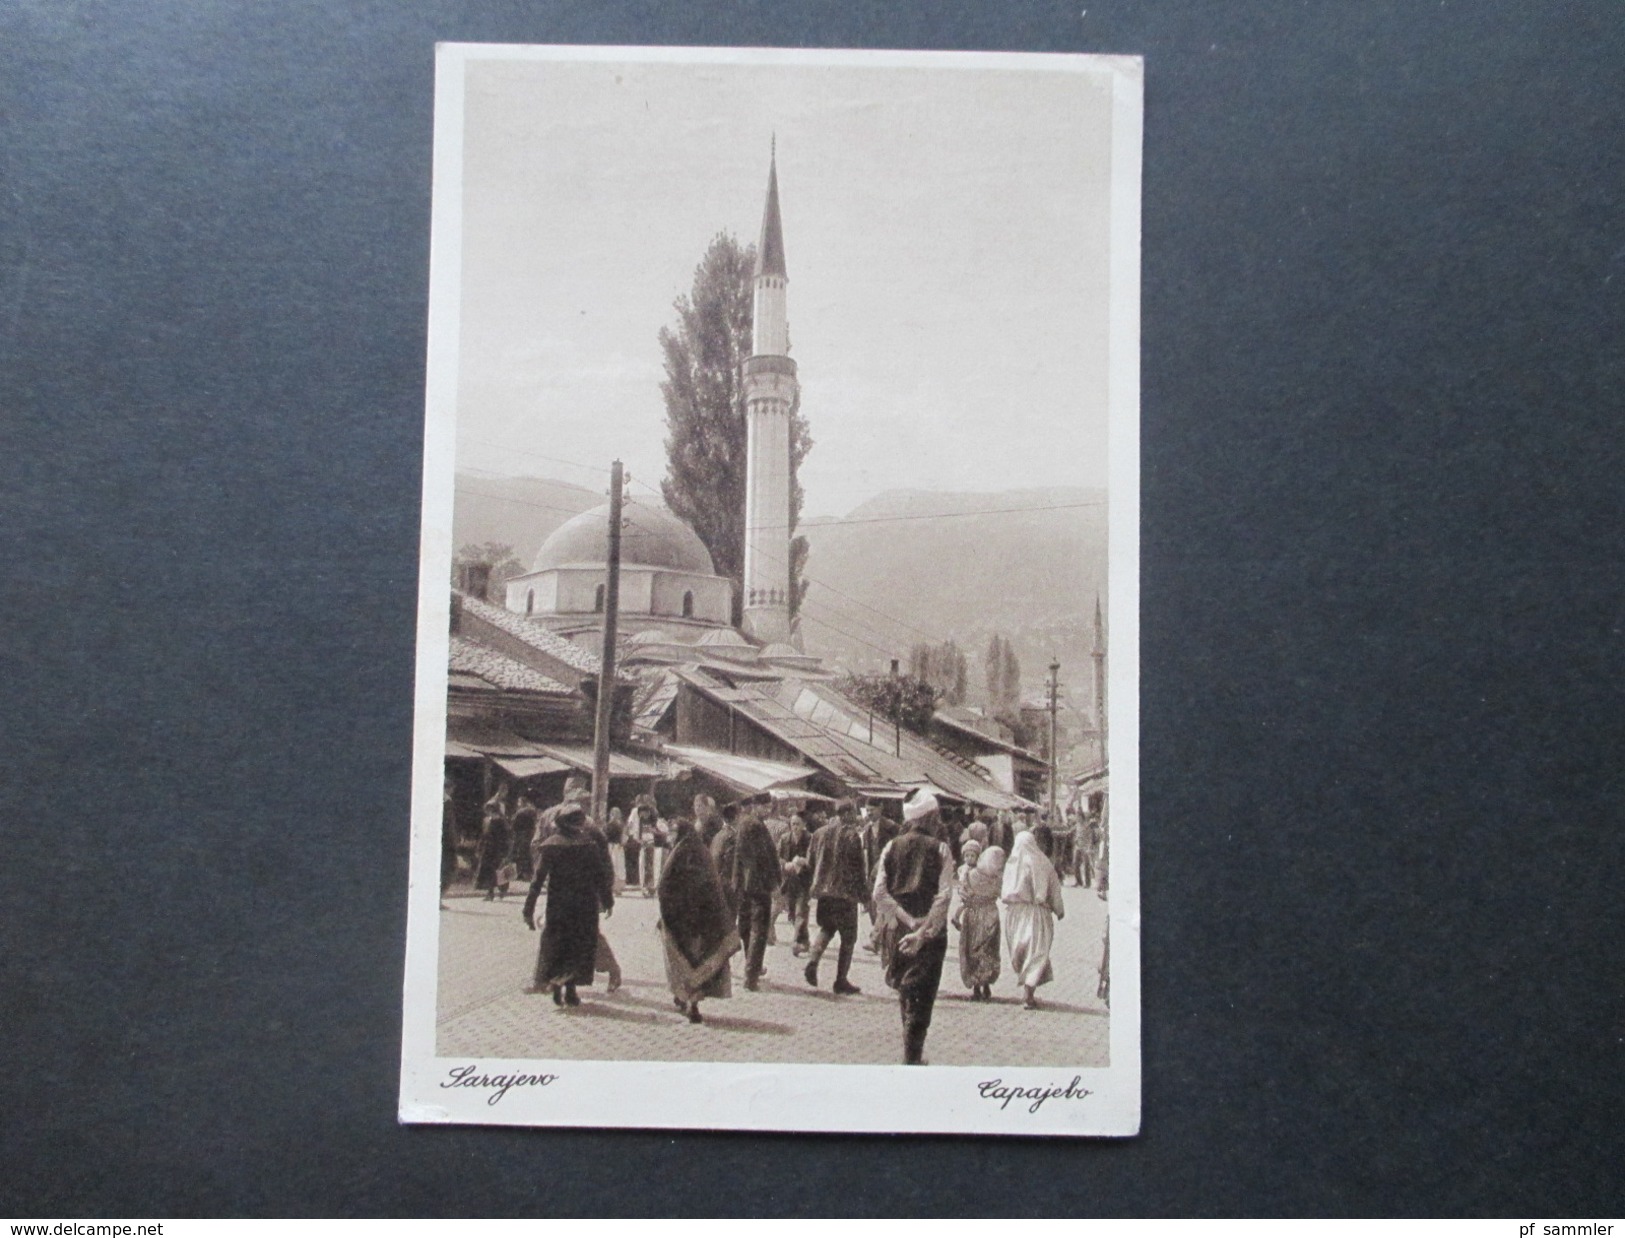 AK 1929 Bosnien / SHS. Dapajebo / Sarajewo. Einheimische / Moschee / Kirche. An Prof. Dr. Carl Patsch. Social Philately - Bosnien-Herzegowina